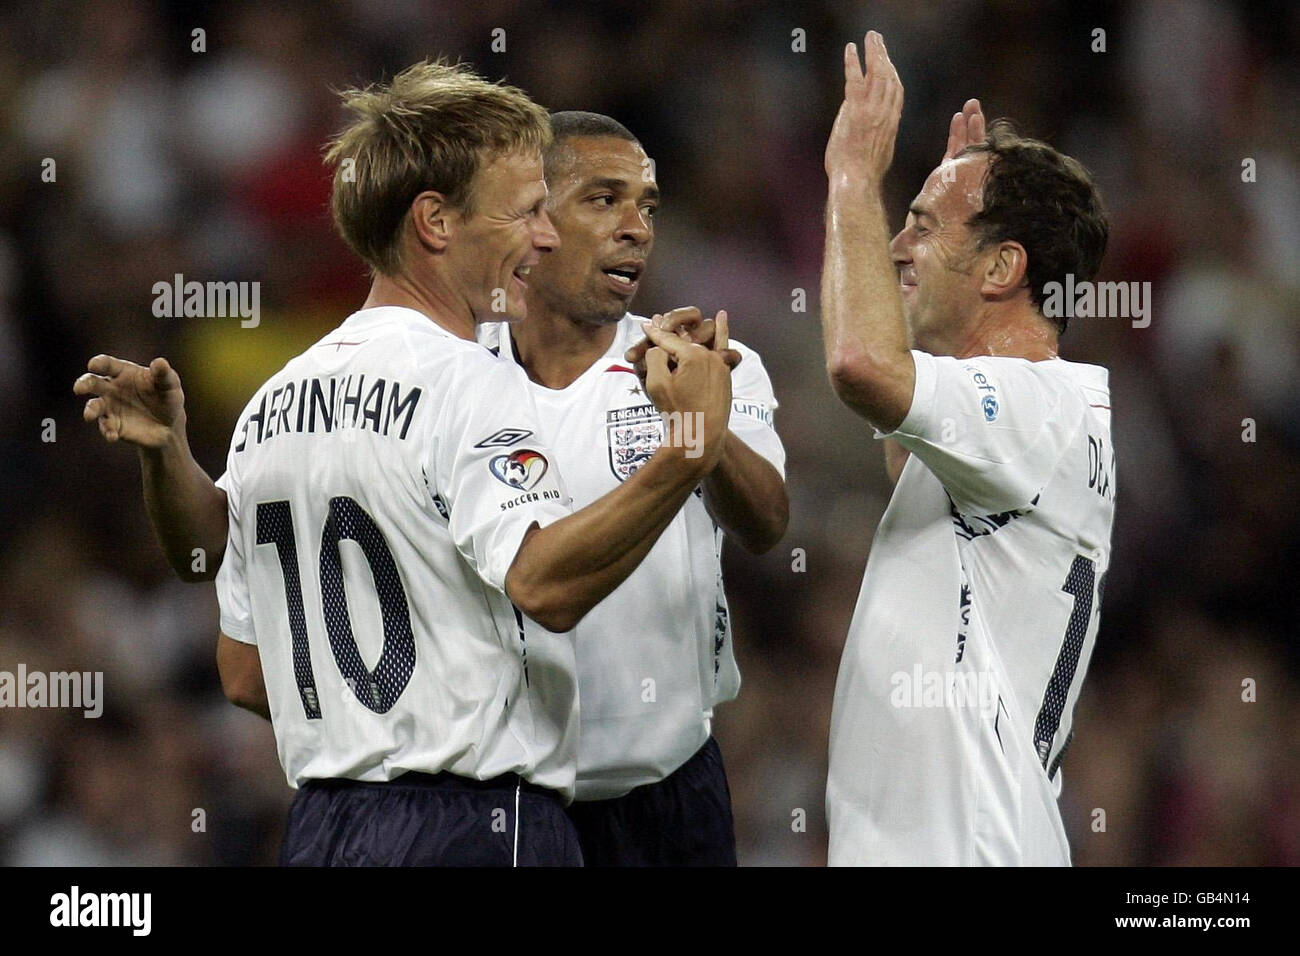 Terry Sheringham (à gauche) célèbre avec des Walker (au centre) et Angus Deayton (à droite) au match de football de bienfaisance Soccer Aid 2008 au stade Wembley, à Londres. Banque D'Images